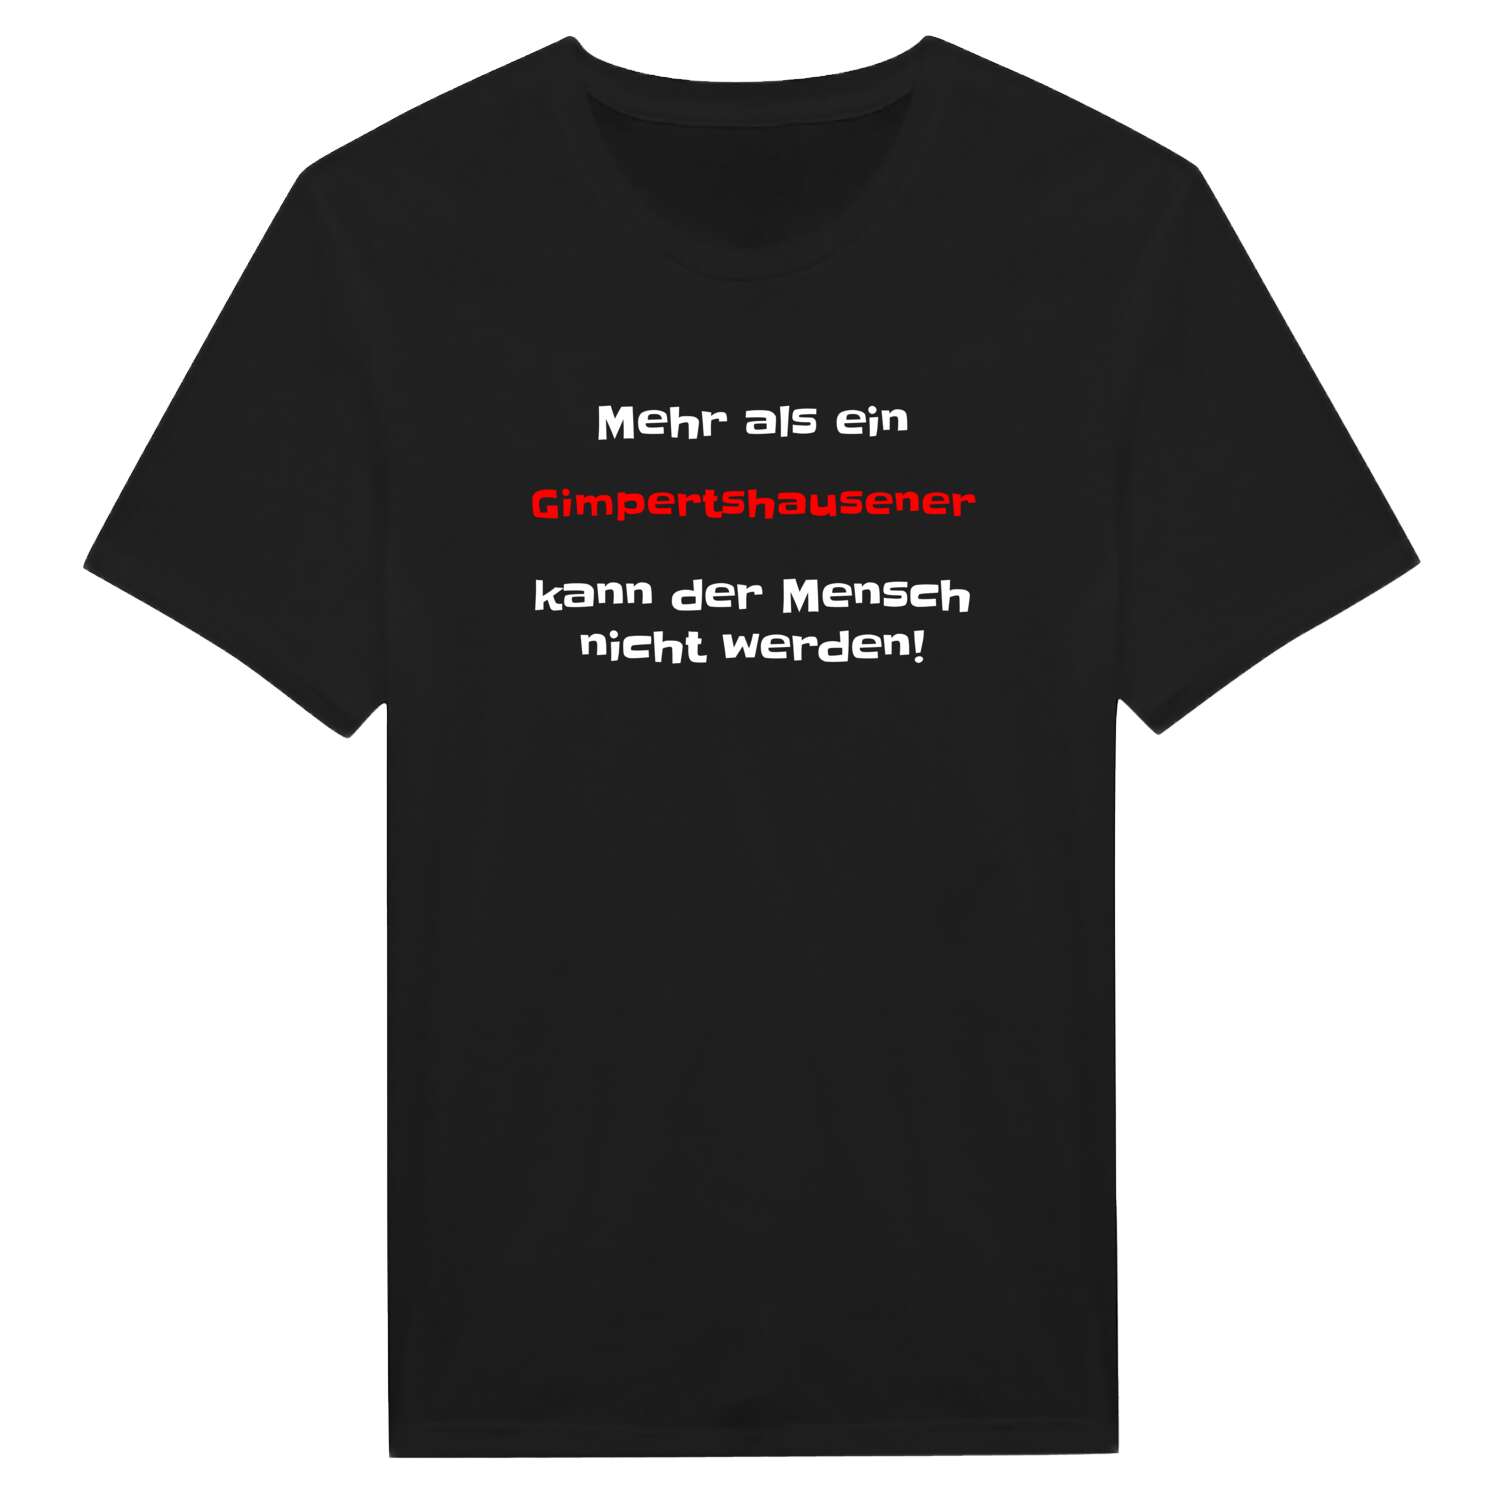 Gimpertshausen T-Shirt »Mehr als ein«